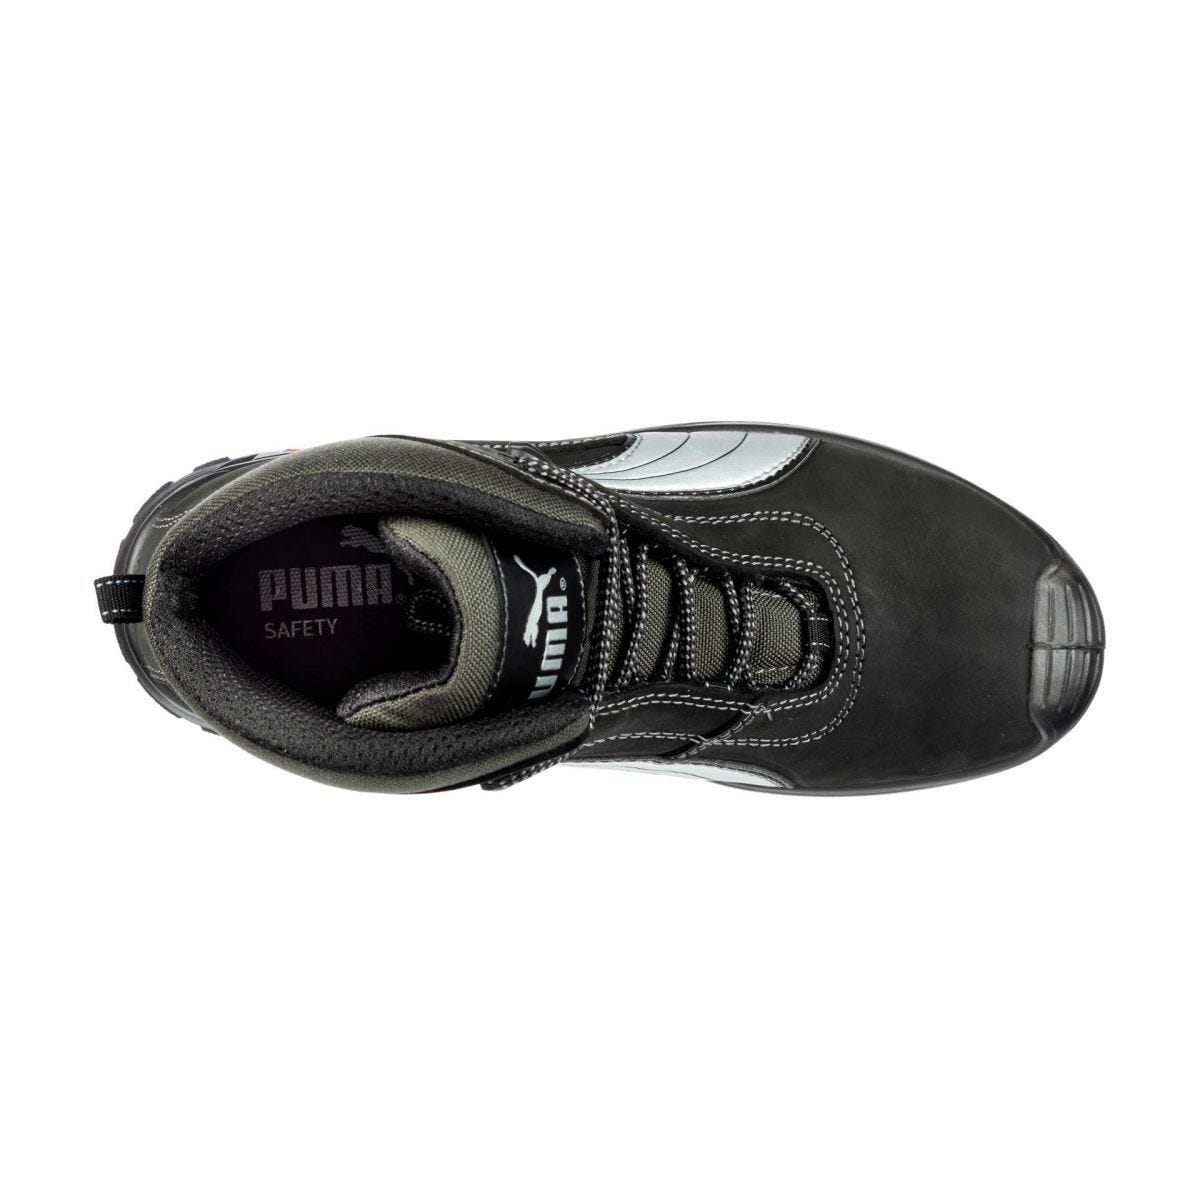 Chaussures de sécurité Cascades mid S3 HRO SRC - Puma - Taille 39 2